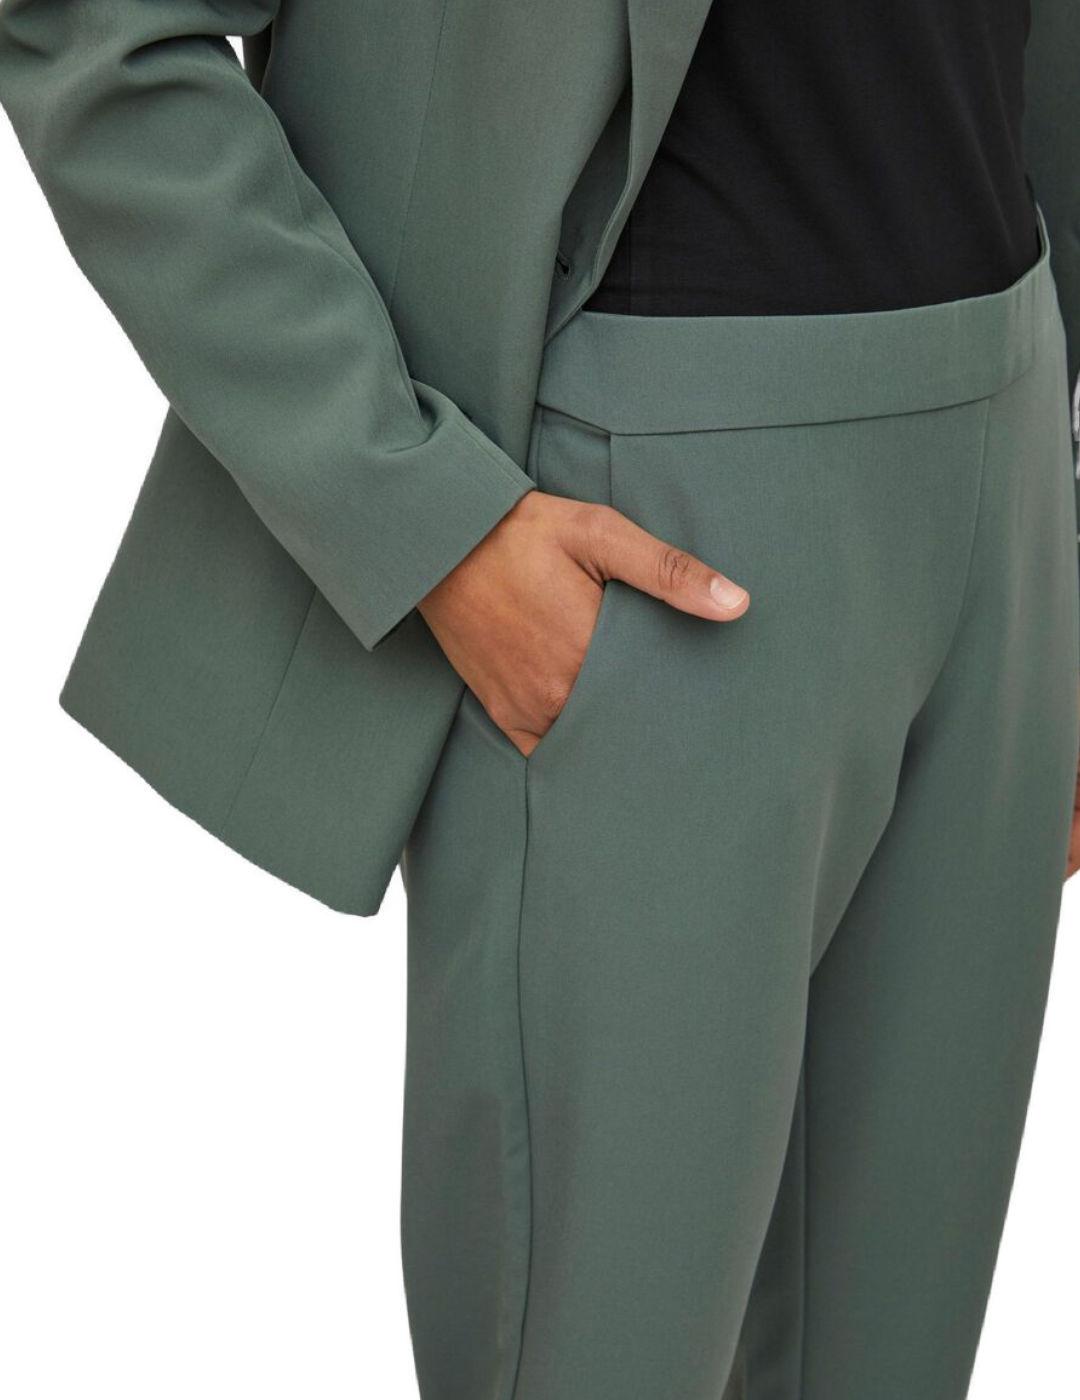 Pantalon Vila Carrie slim color verde de vestir para mujer